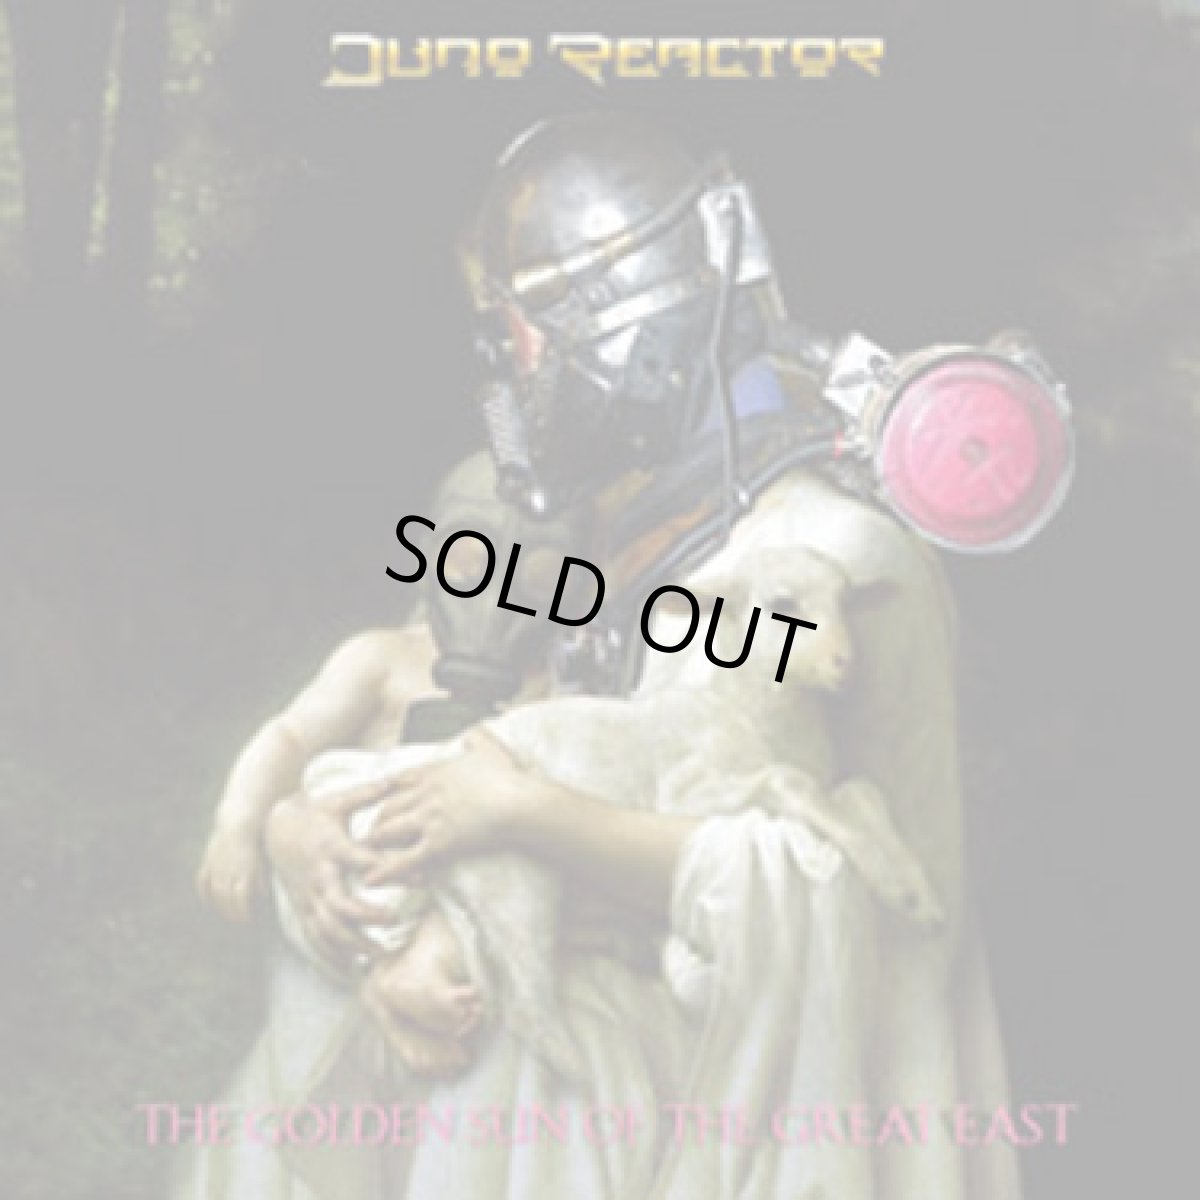 画像1: CD「JUNO REACTOR / The Golden Sun Of The Great East」【トランス・テクノ・エレクトロニカ】 (1)